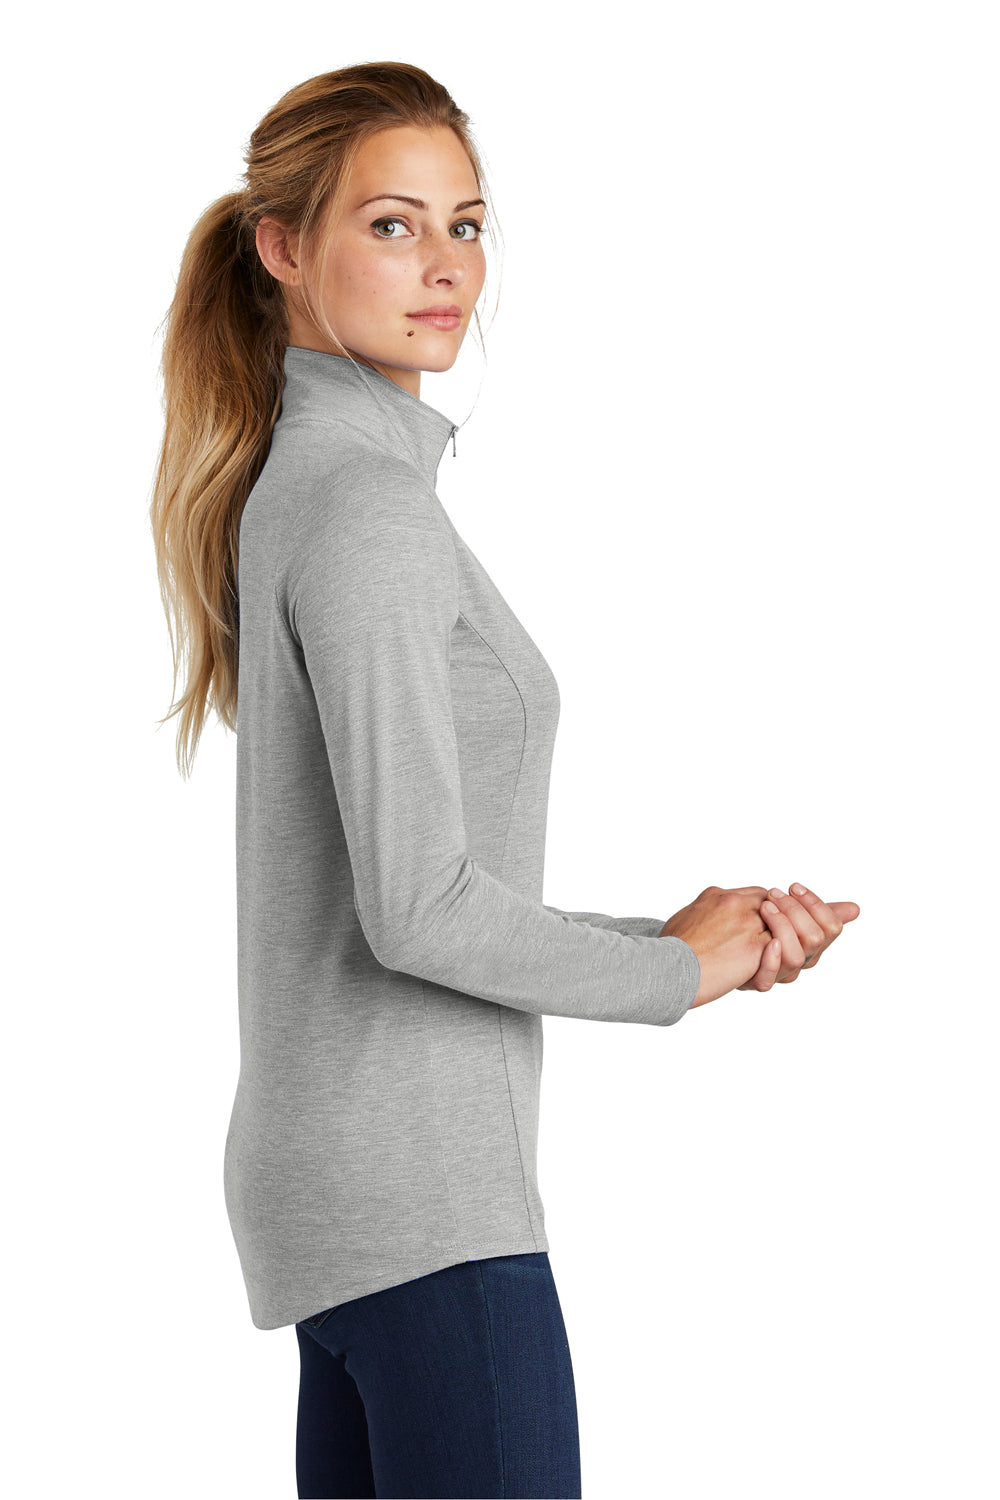 Sport-Tek LST407 Womens Moisture Wicking 1/4 Zip Sweatshirt Light Grey Side